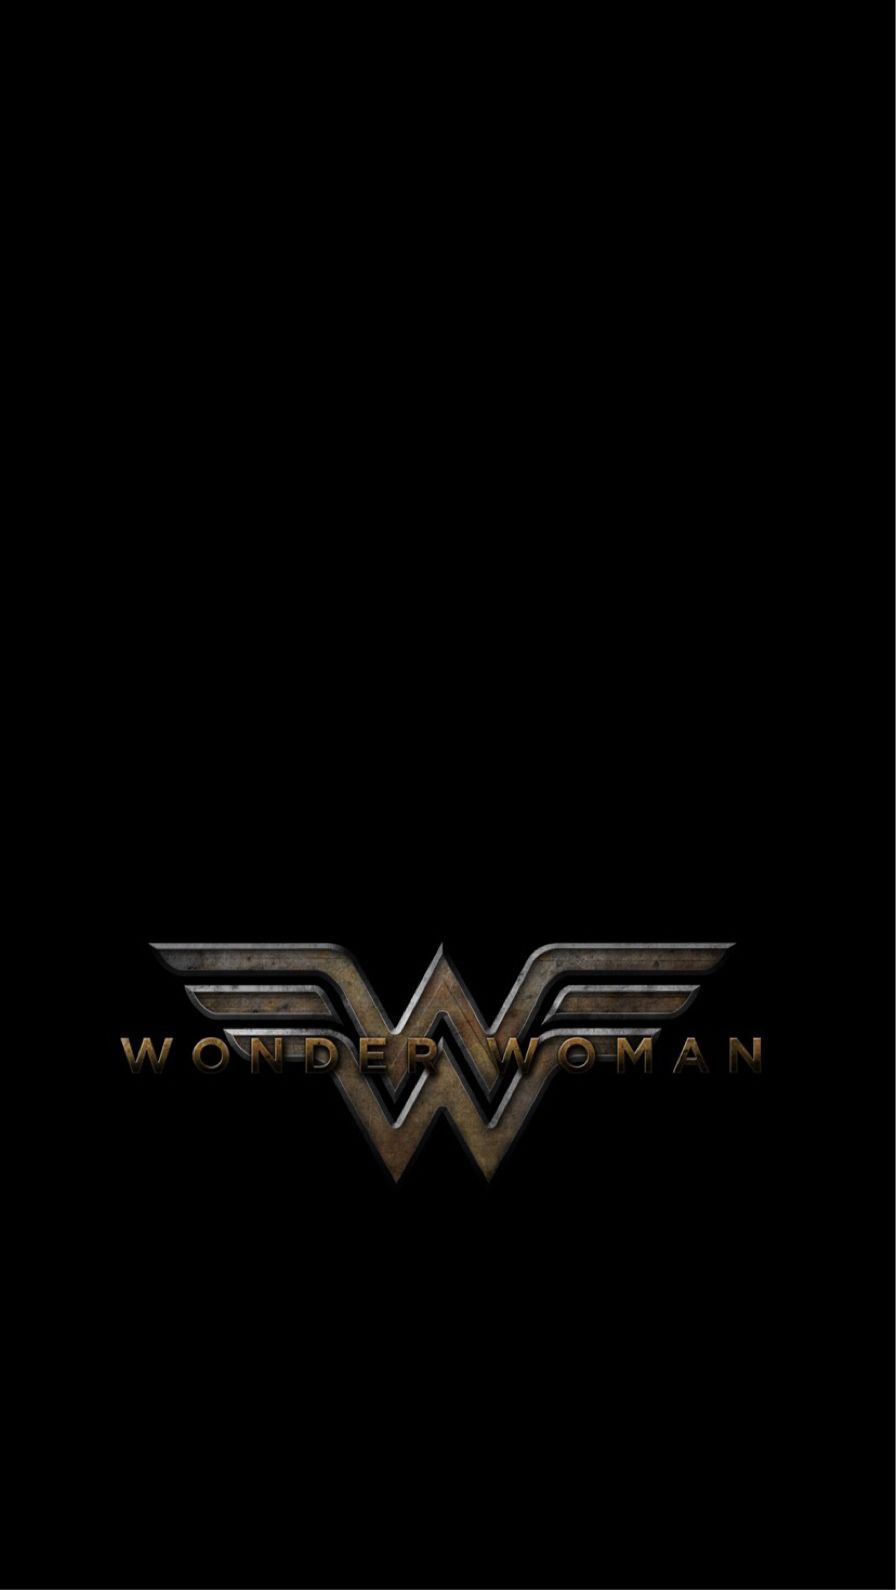 Wonder Woman Logo iPhone Wallpaper Free Wonder Woman Logo iPhone Background